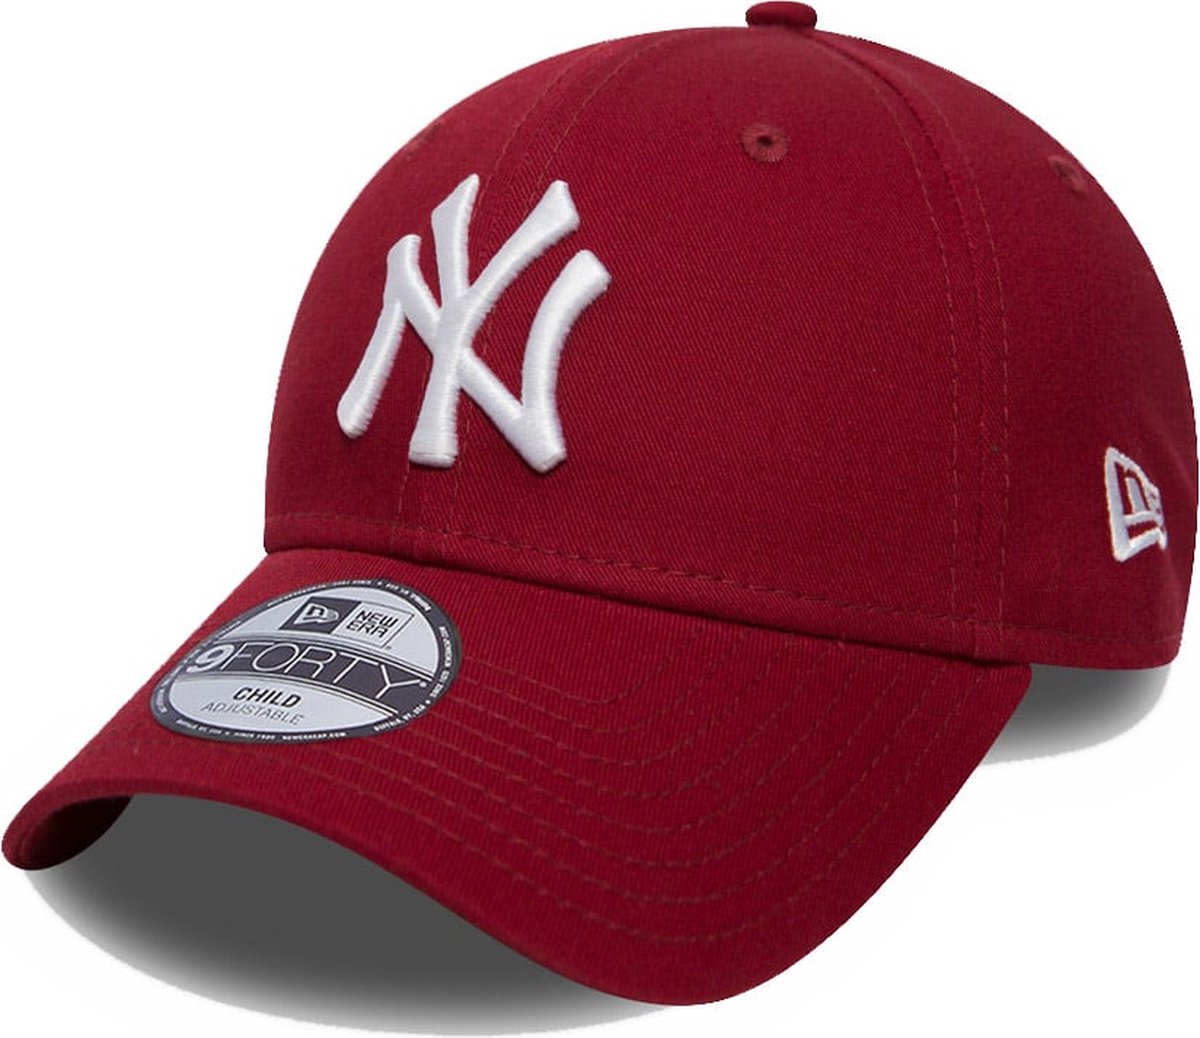 New Era New York Yankees Red Kids 9FORTY Cap - New Era